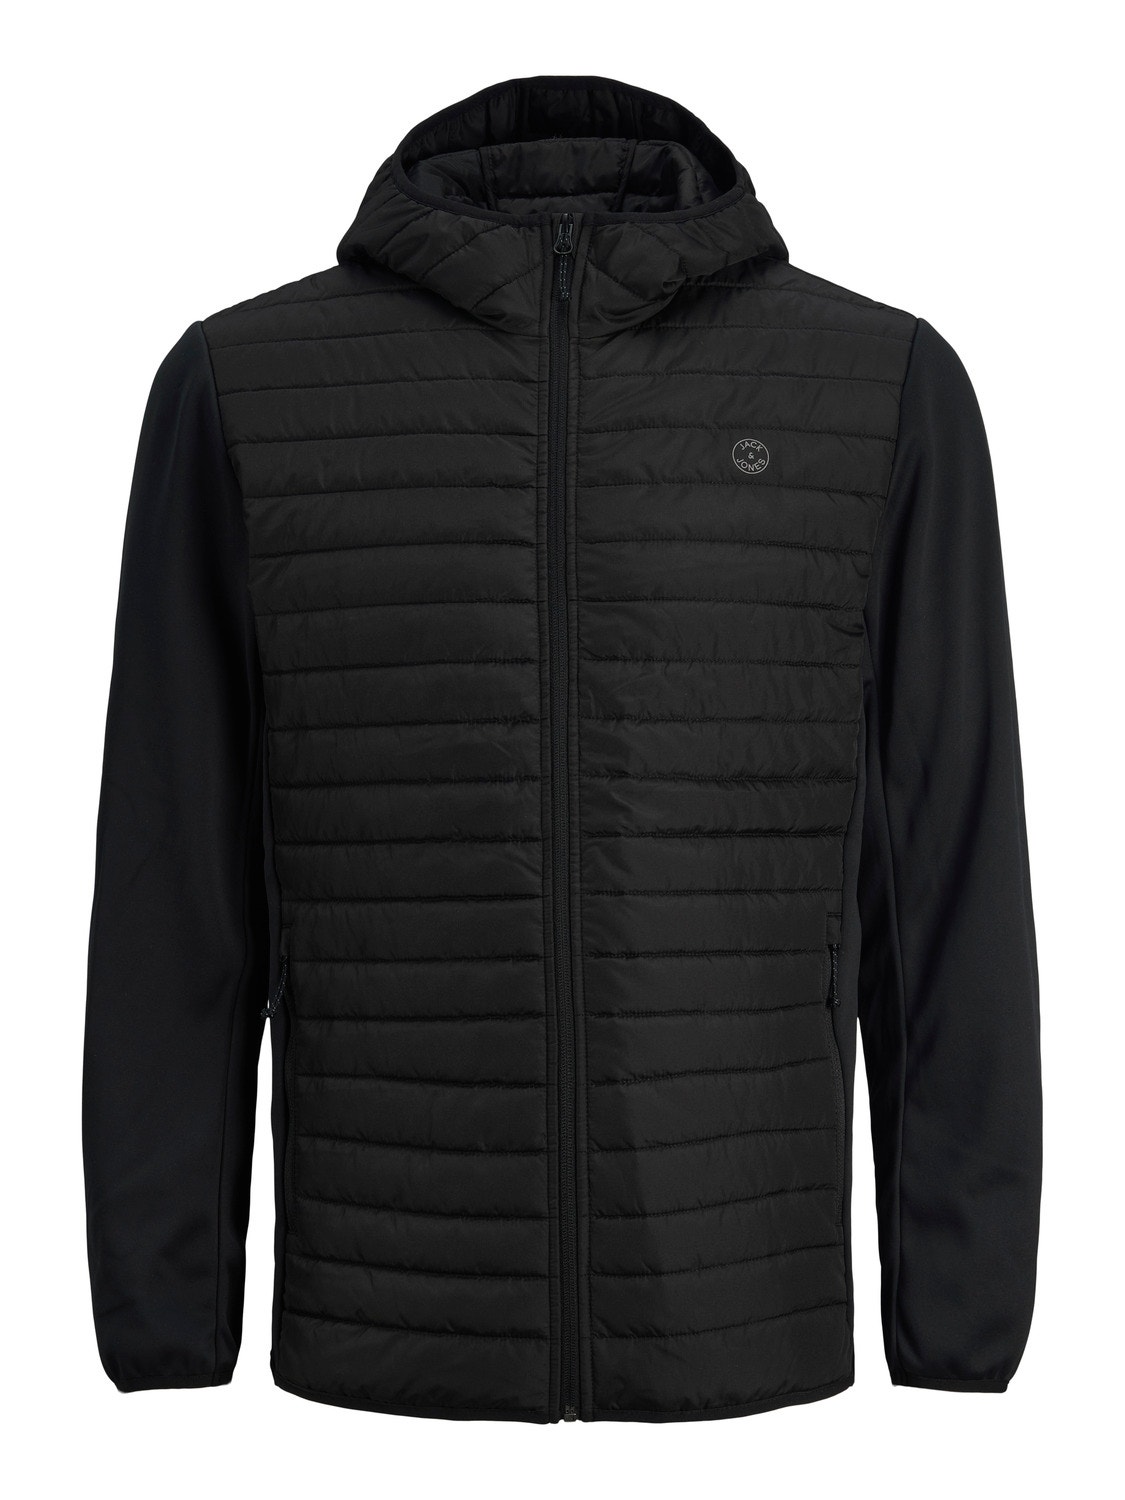 Jack & Jones Hybrid jacket -Black - 12182242